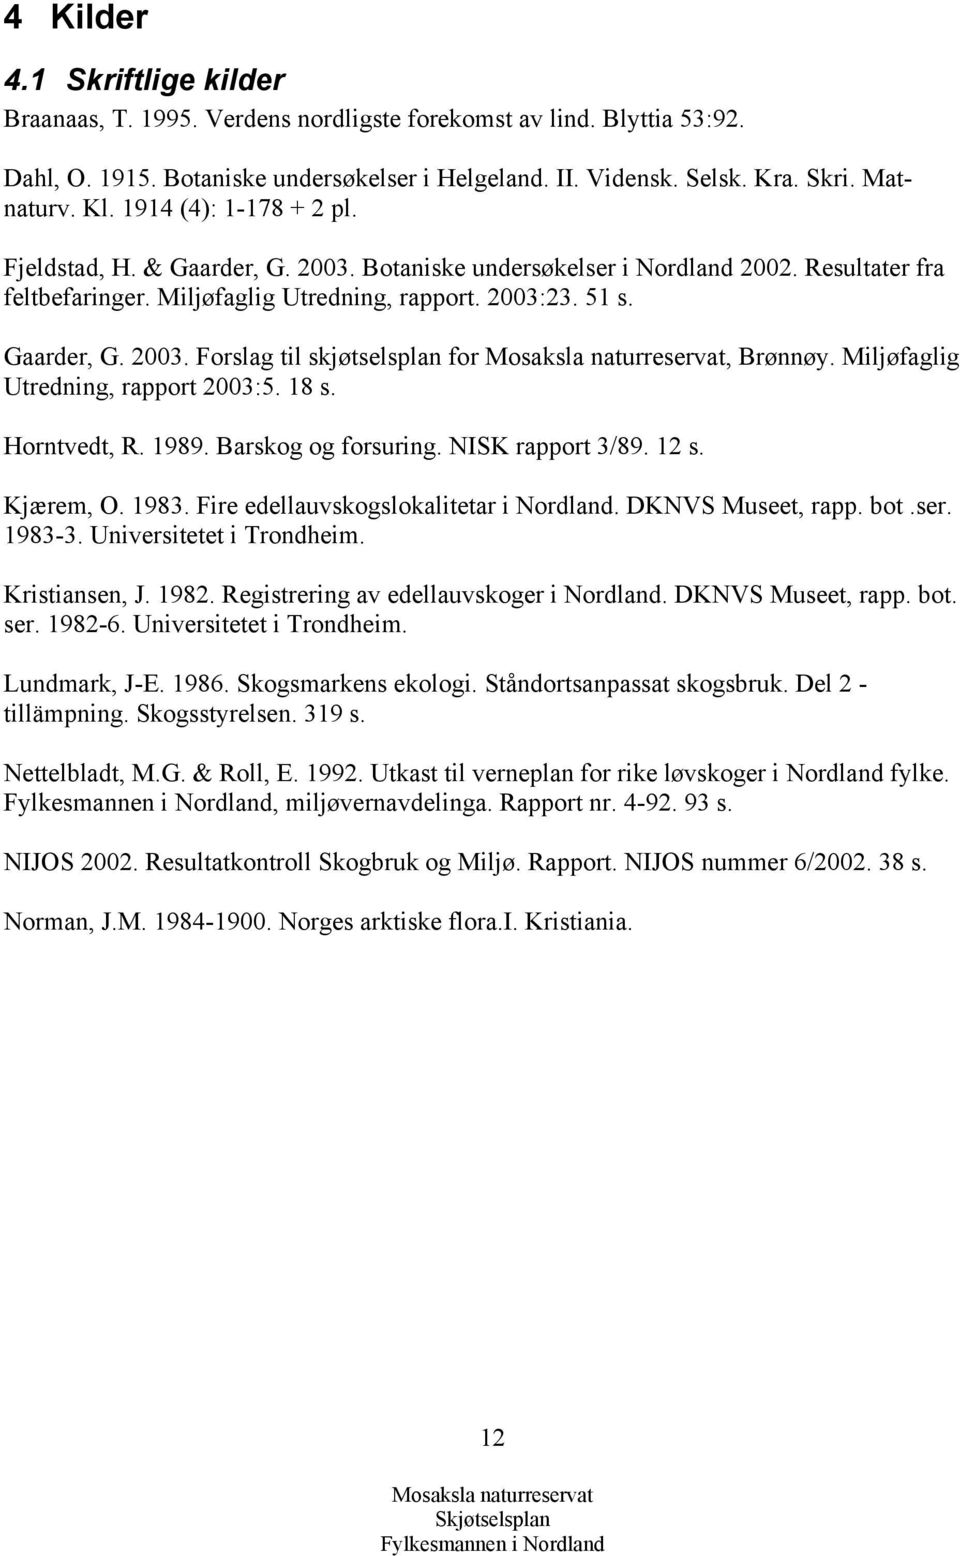 Miljøfaglig Utredning, rapport 2003:5. 18 s. Horntvedt, R. 1989. Barskog og forsuring. NISK rapport 3/89. 12 s. Kjærem, O. 1983. Fire edellauvskogslokalitetar i Nordland. DKNVS Museet, rapp. bot.ser.